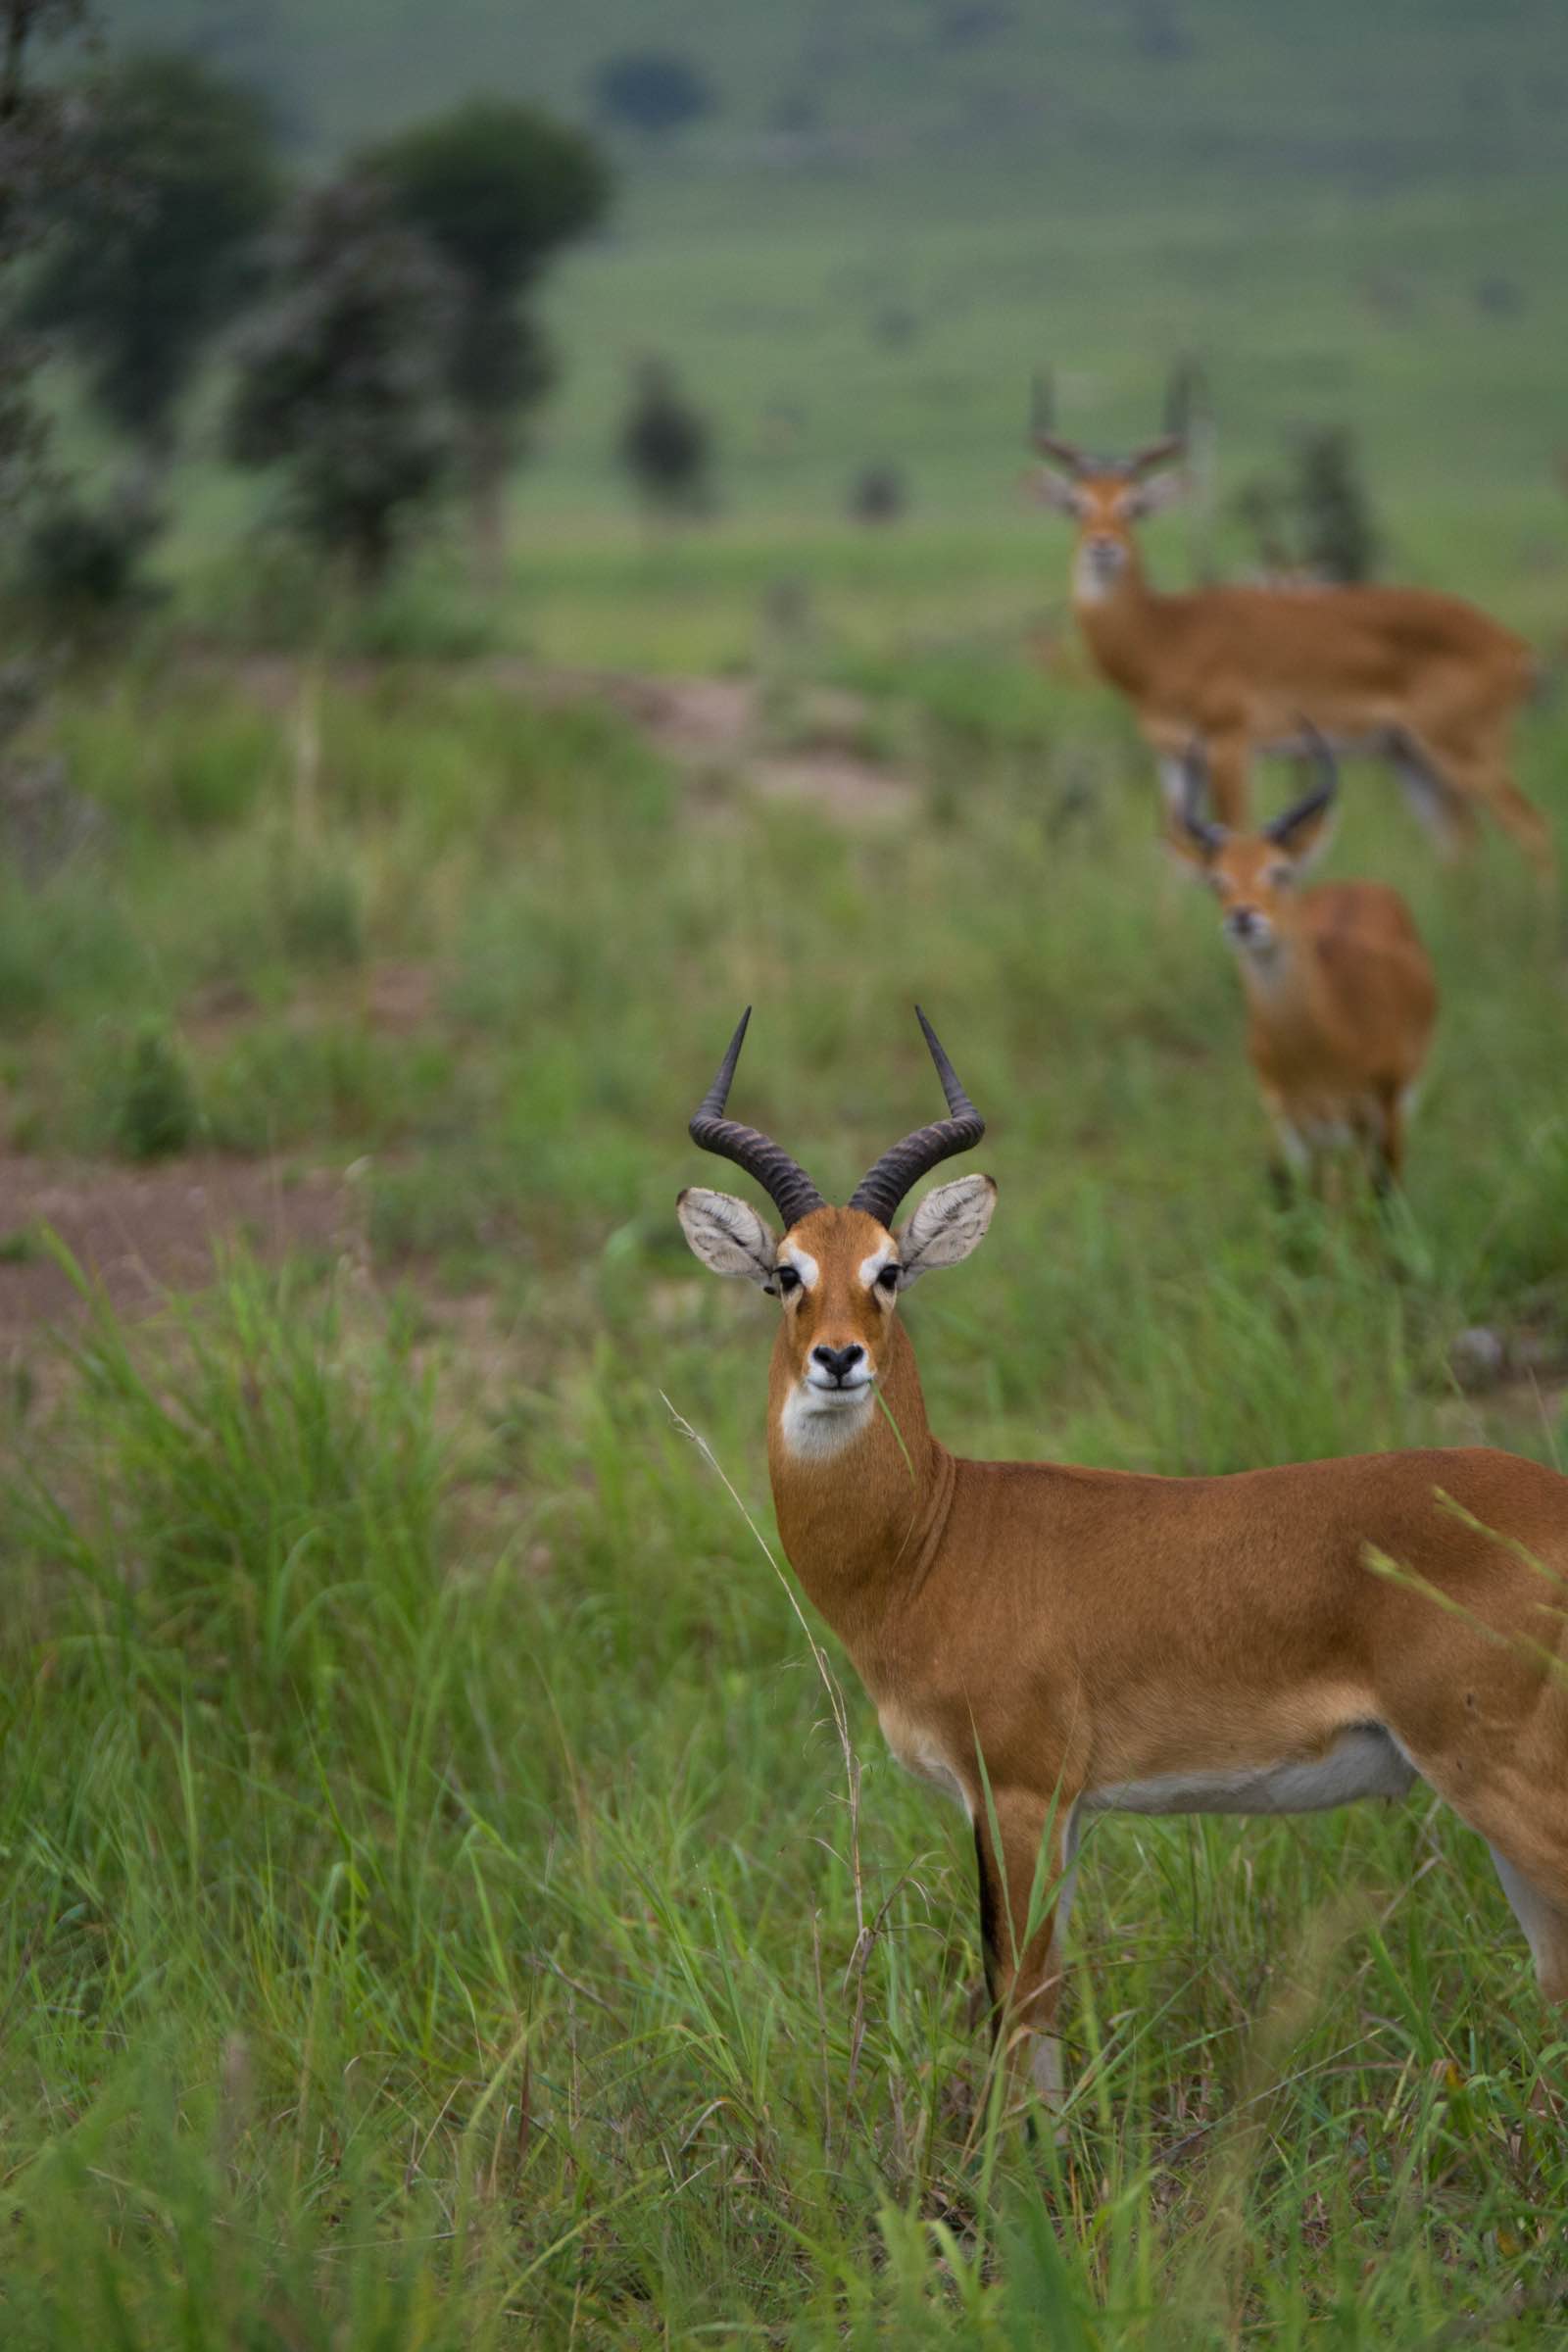 The Ugandan kob - the country's national animal